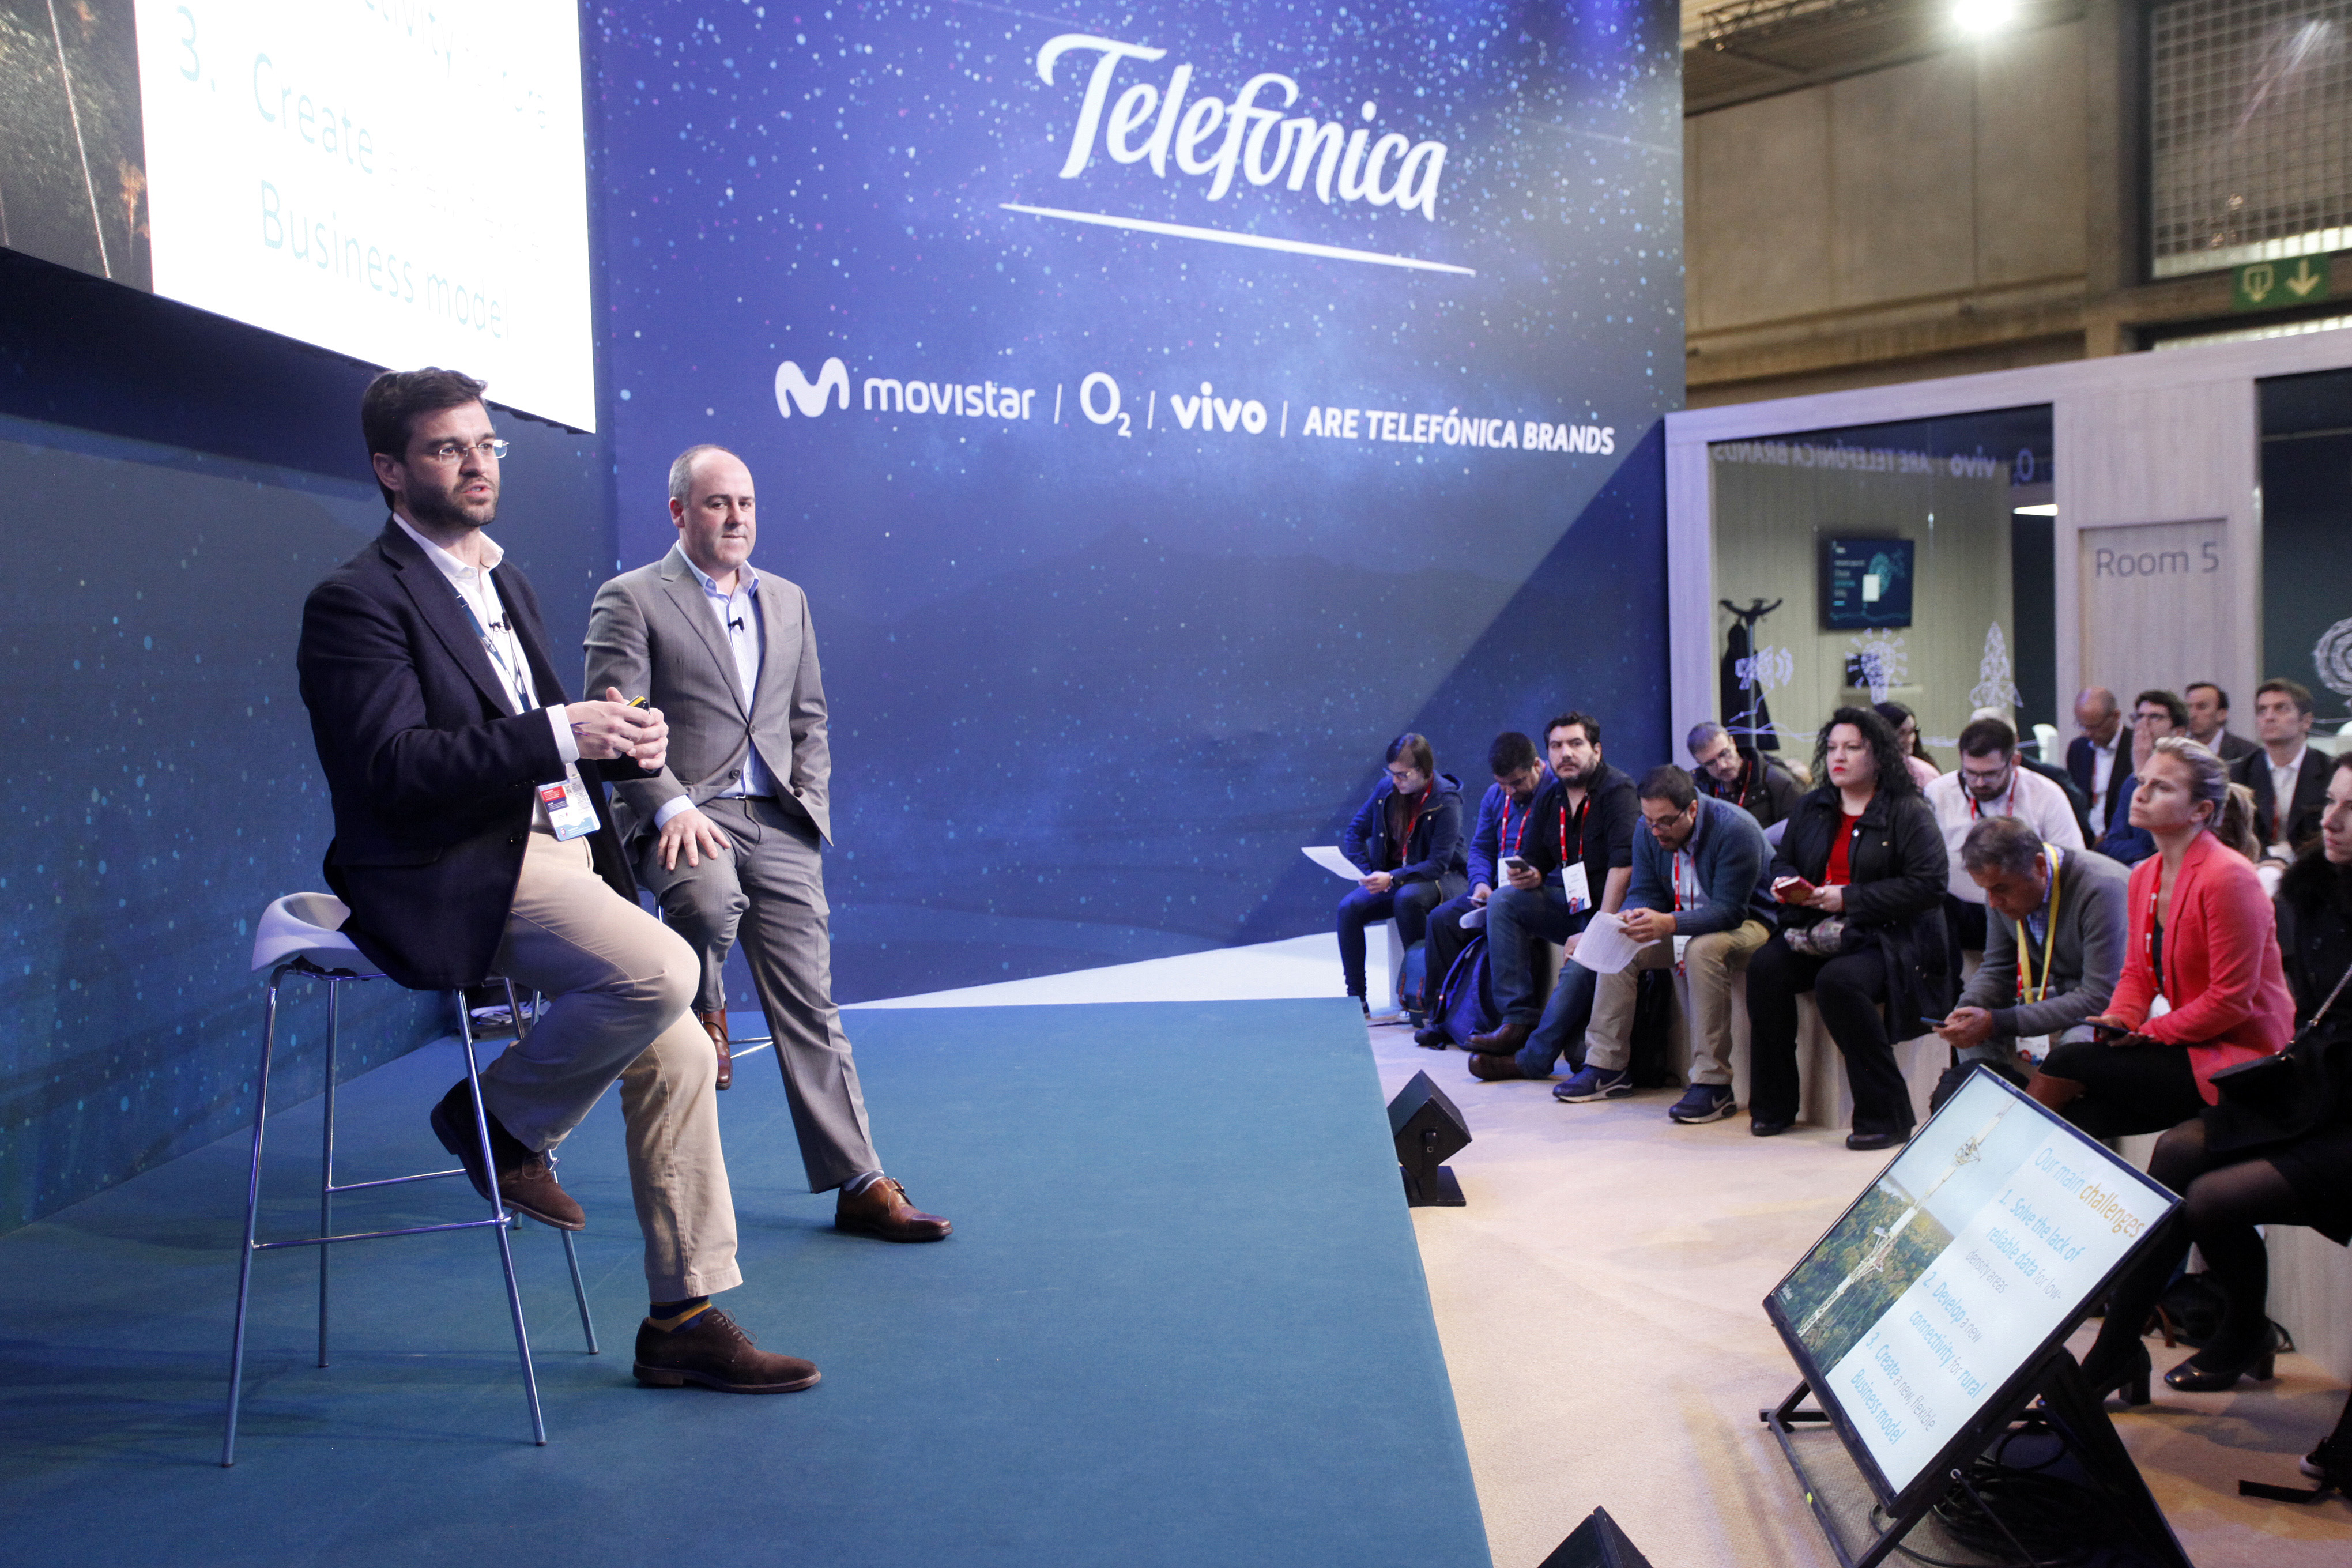 De izquierda a derecha: Gonzalo Martín-Villa, director global de Innovación de Telefónica; y Patrick López, director of customer centric networks de Telefónica